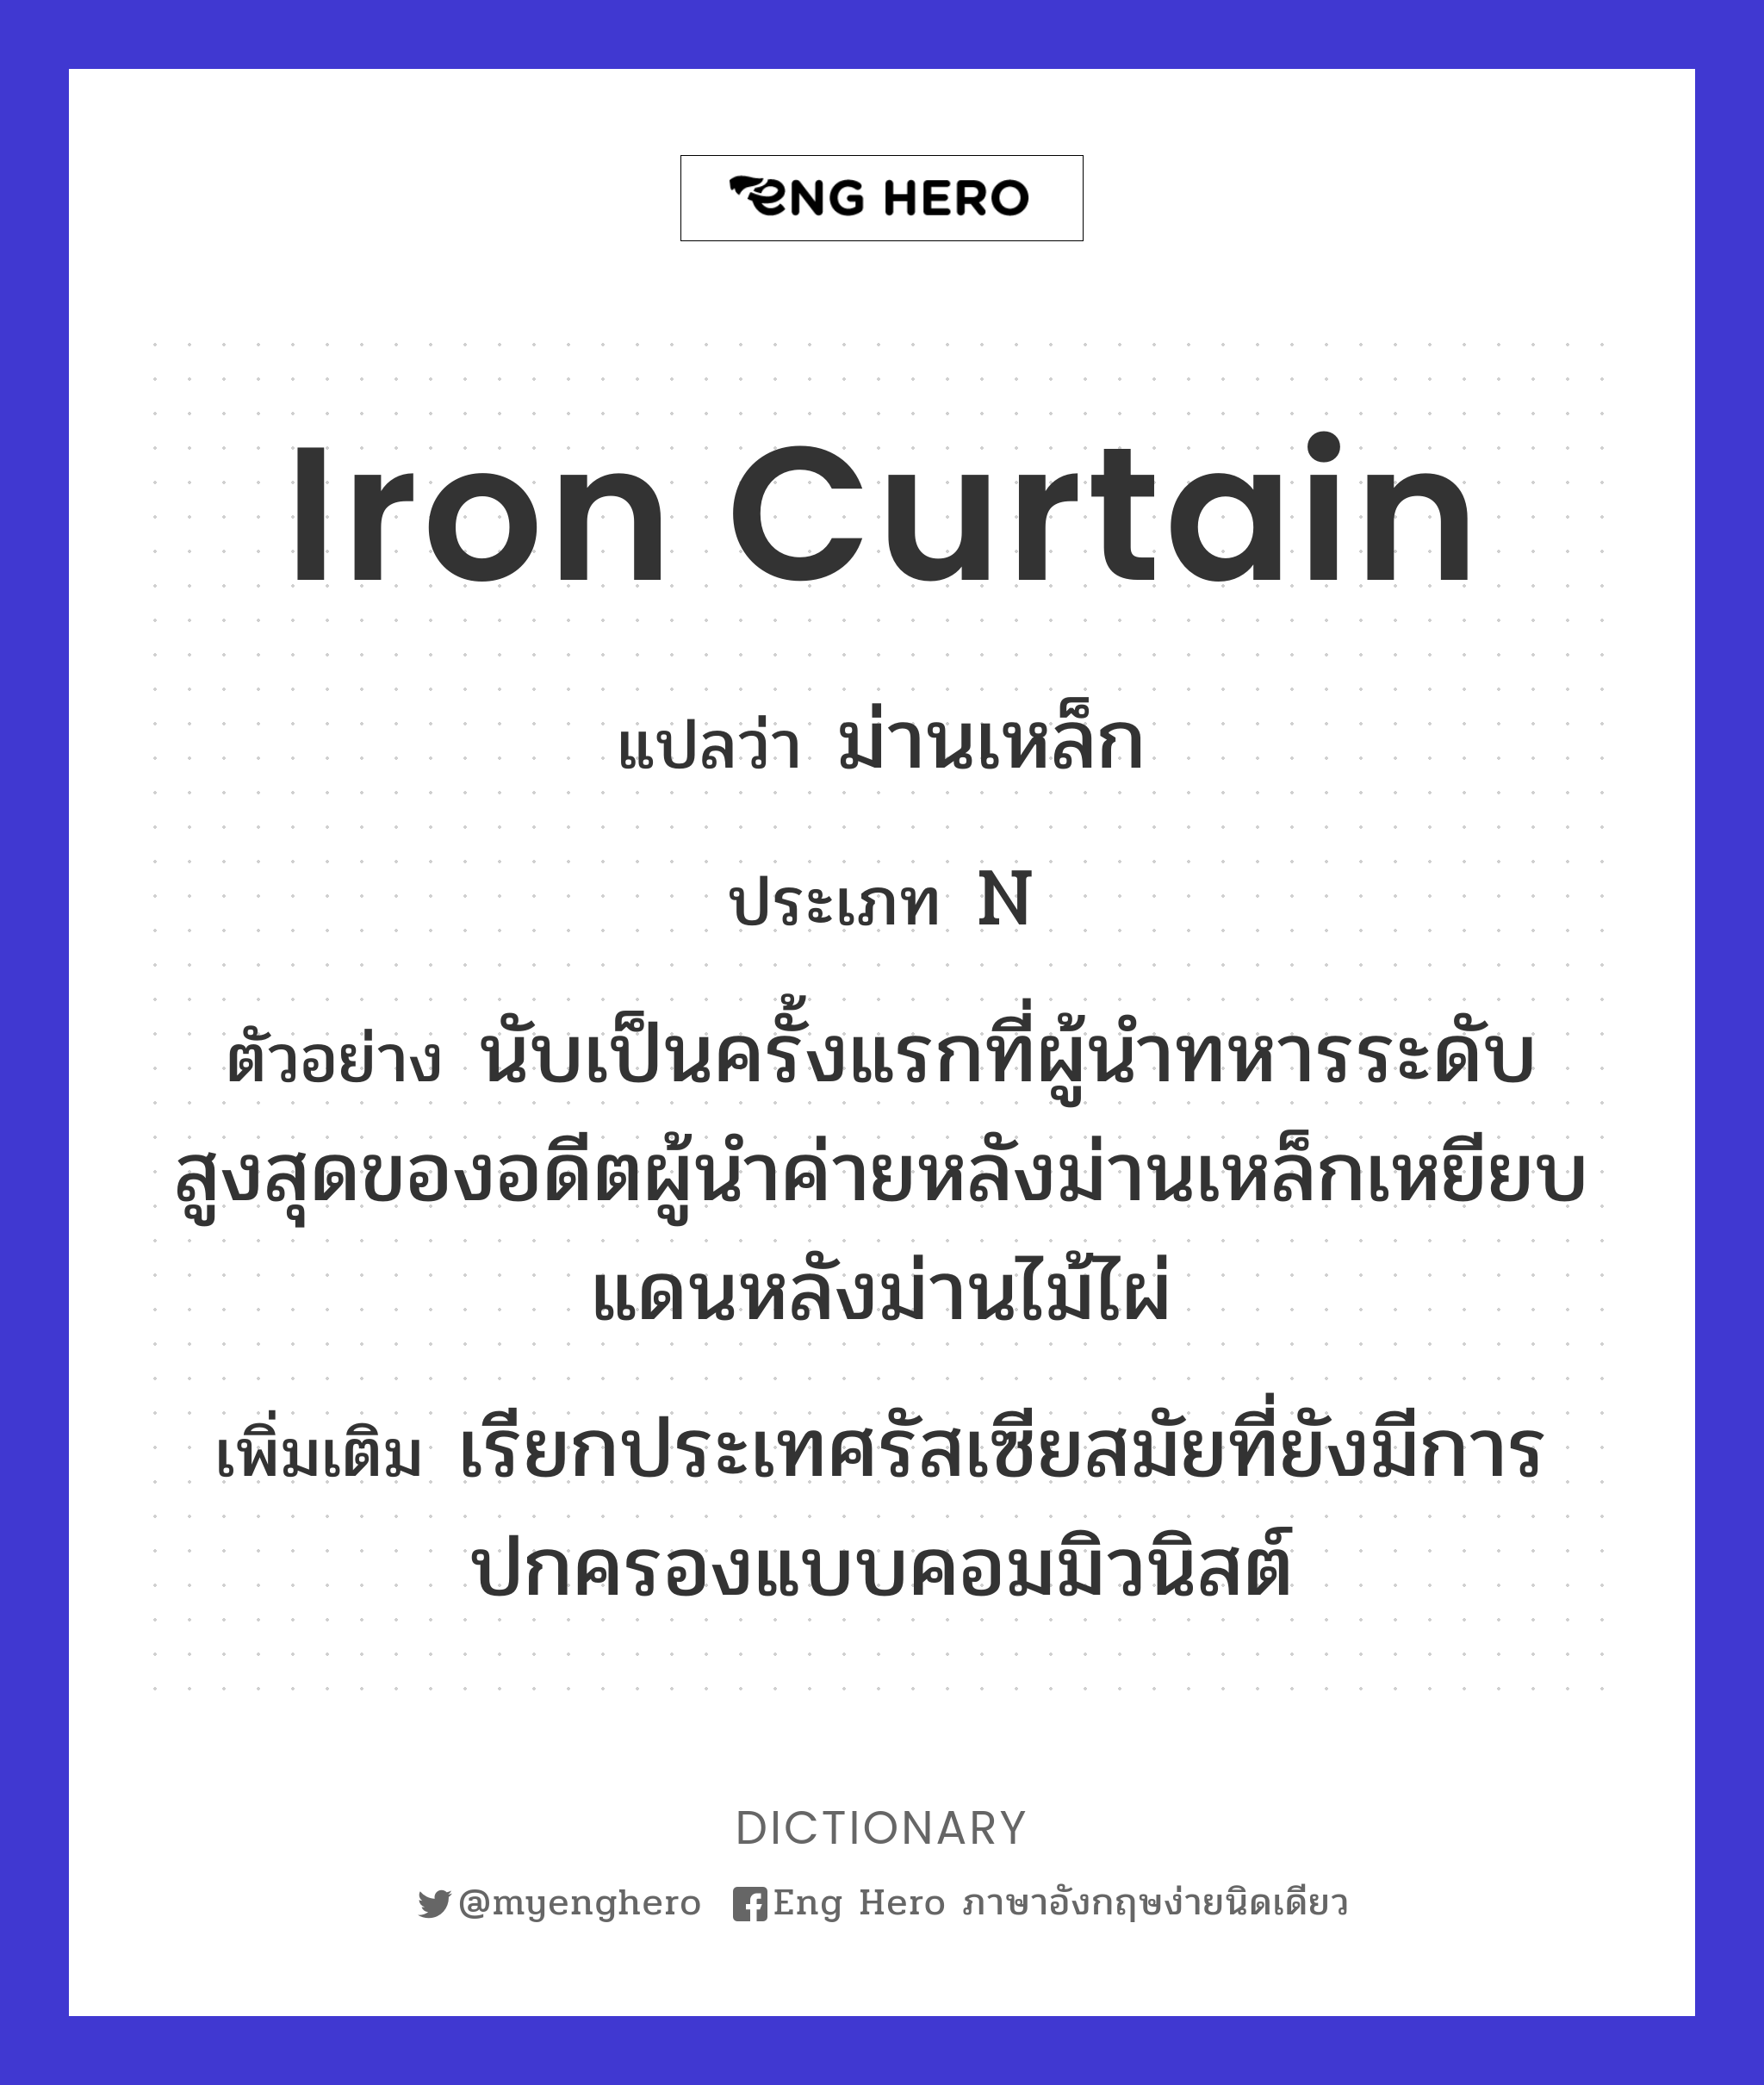 iron curtain